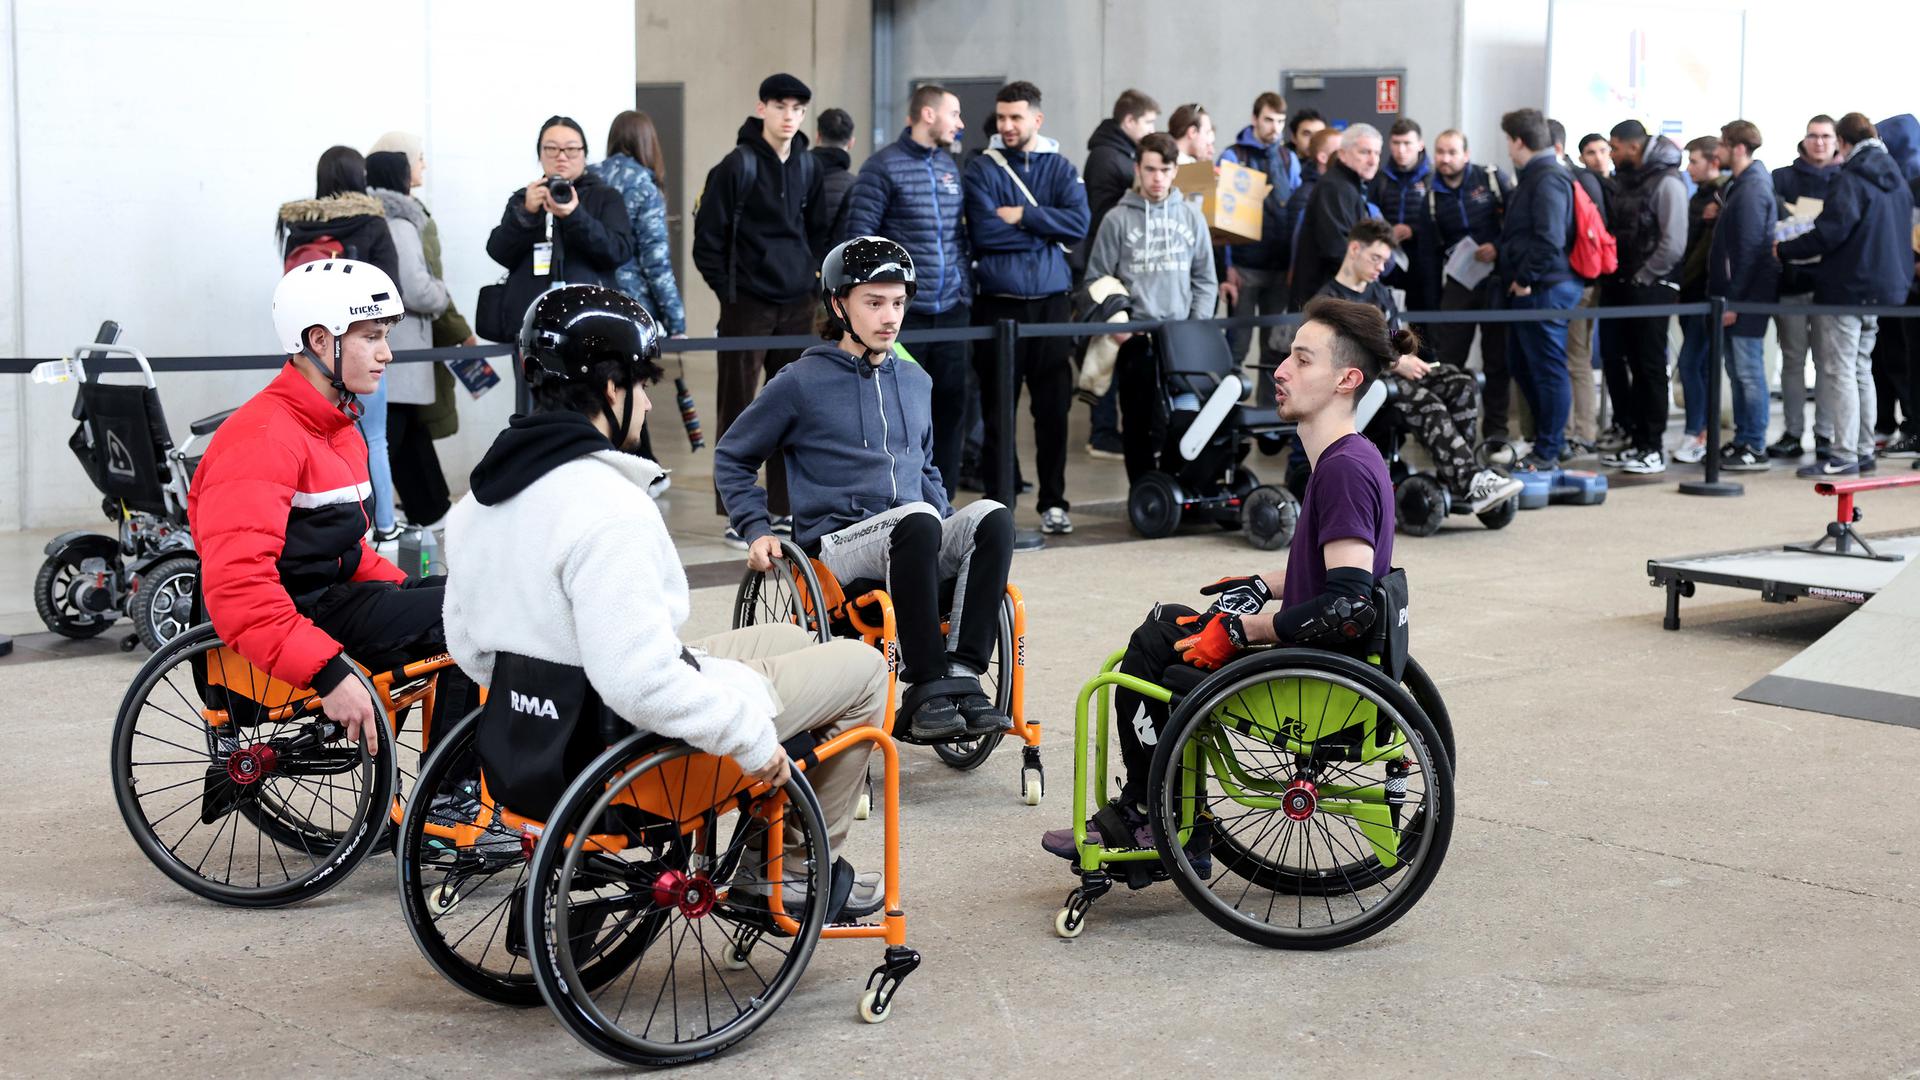 Un atelier "chaise roulante" pour permettre aux valides de connaître les sensations et difficultés d'une personne handicapée.